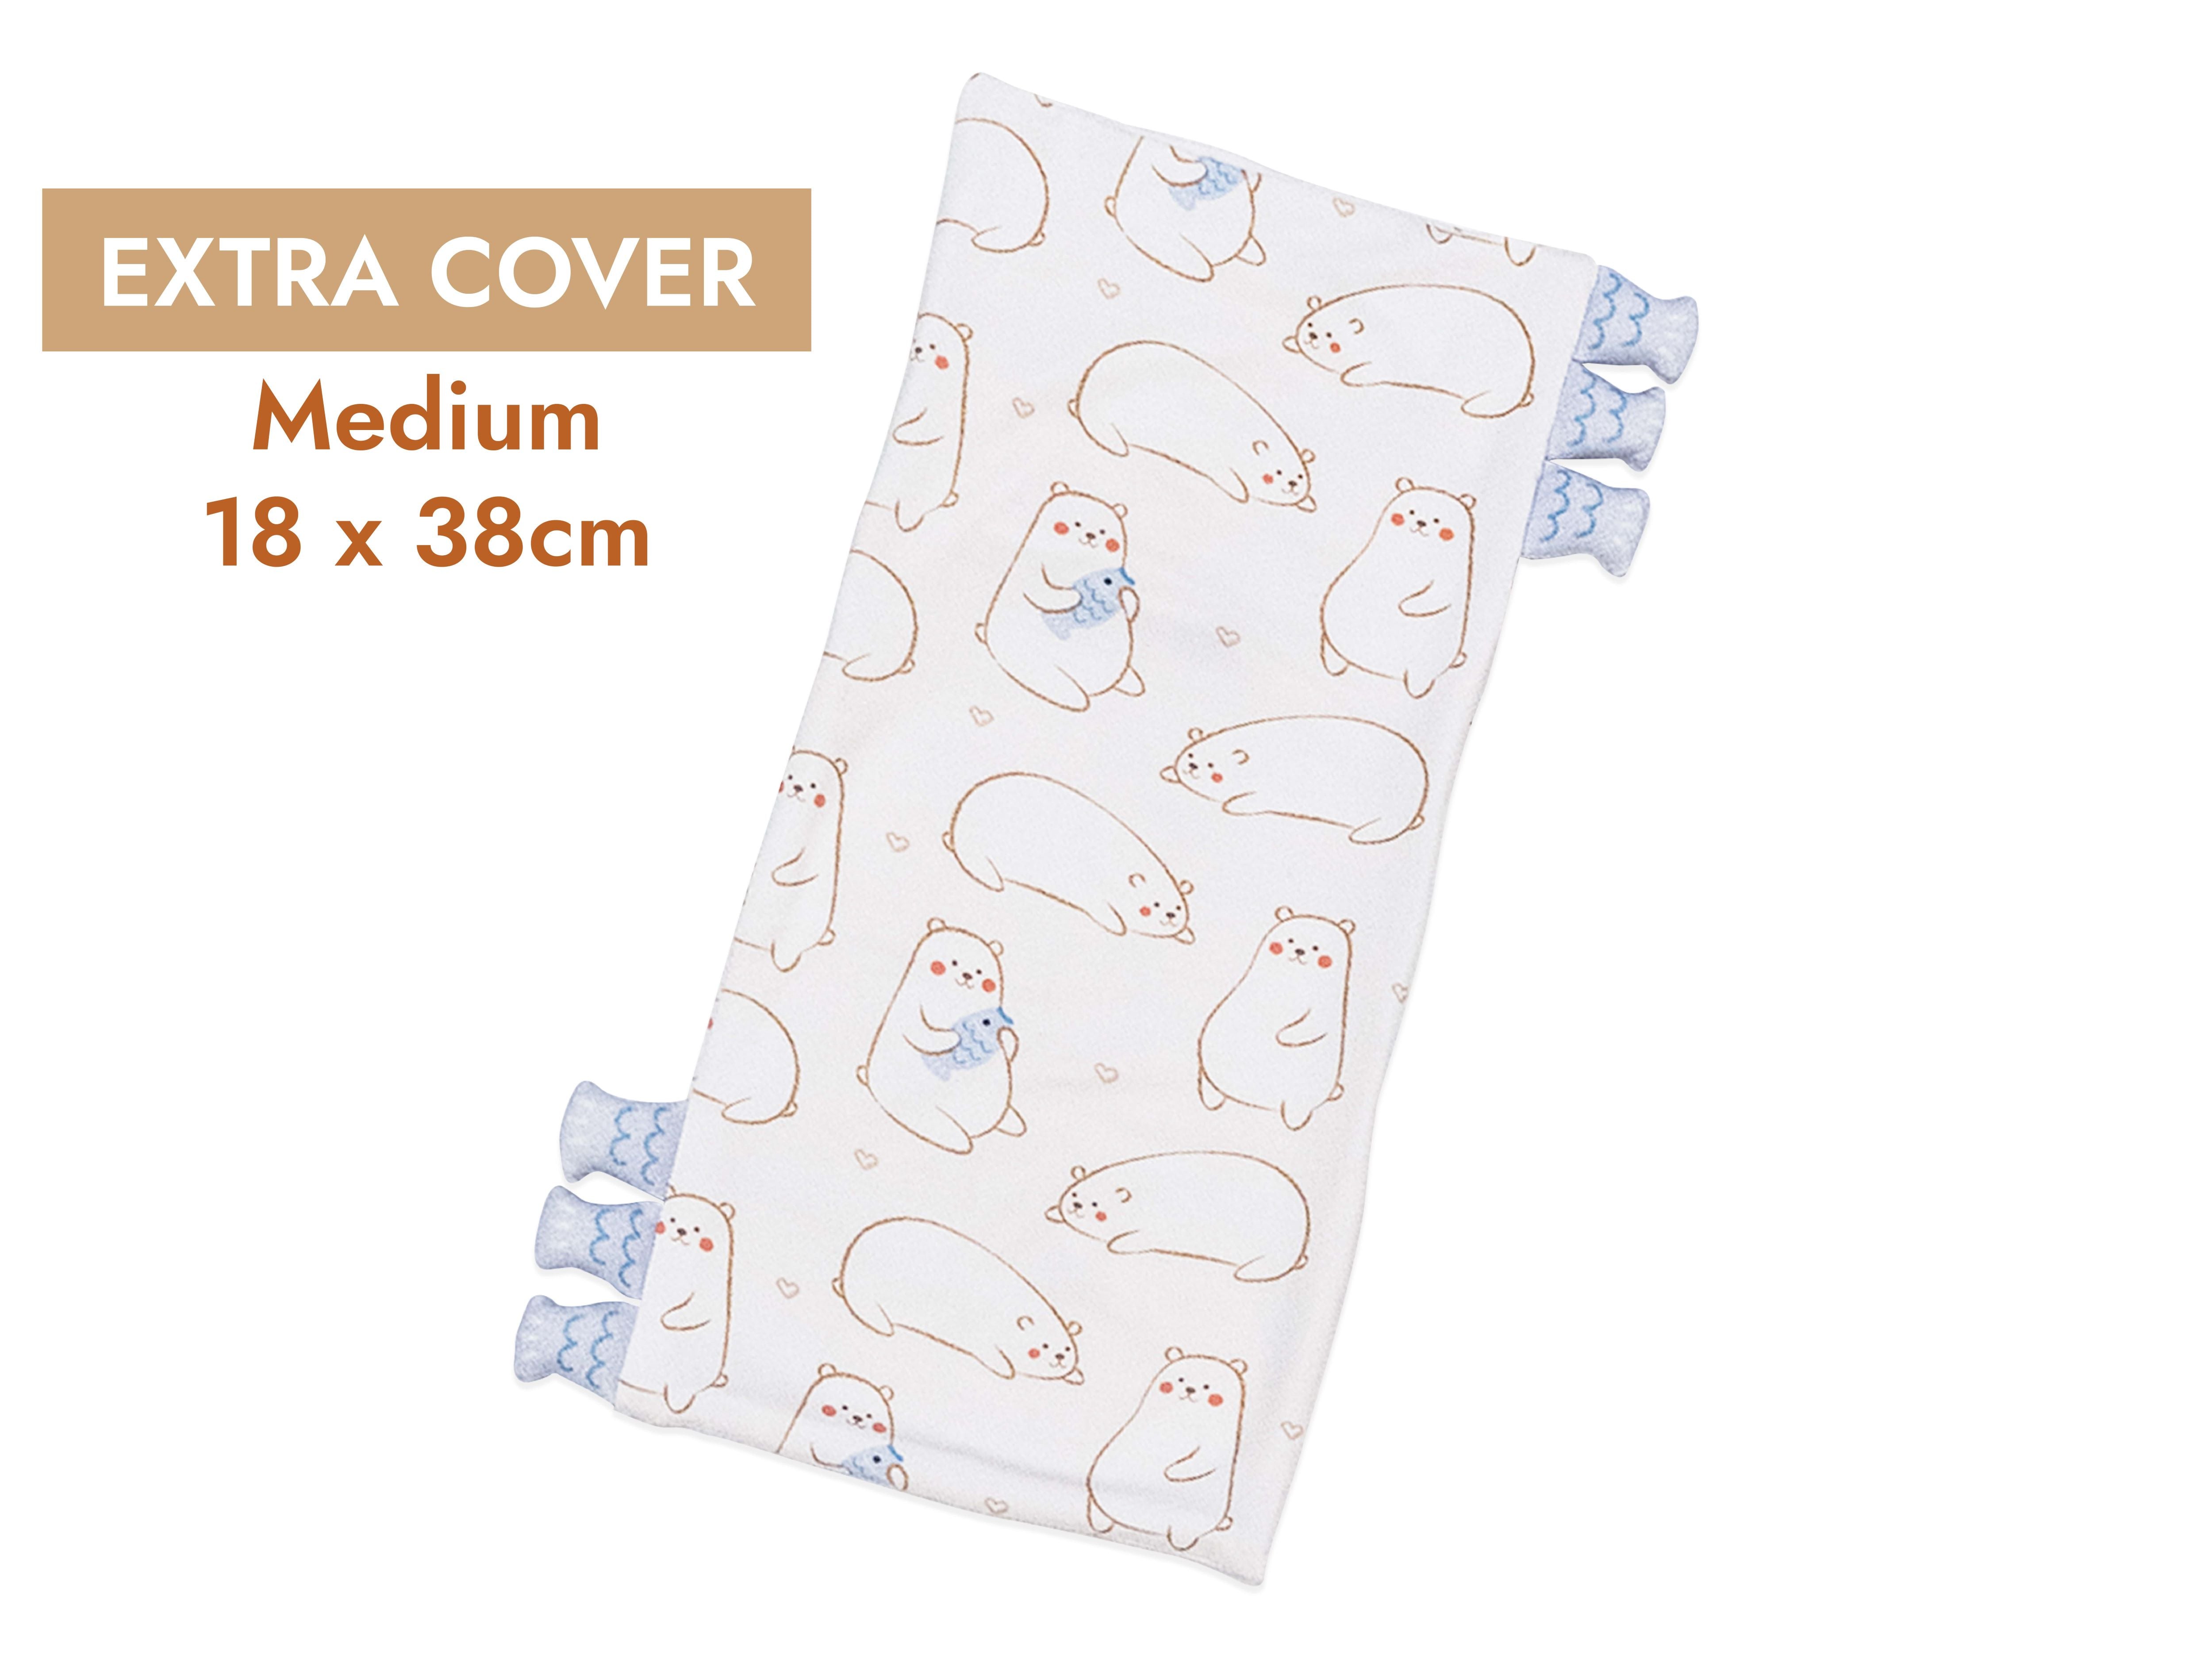 cho medium pillow extra cover maru bear design